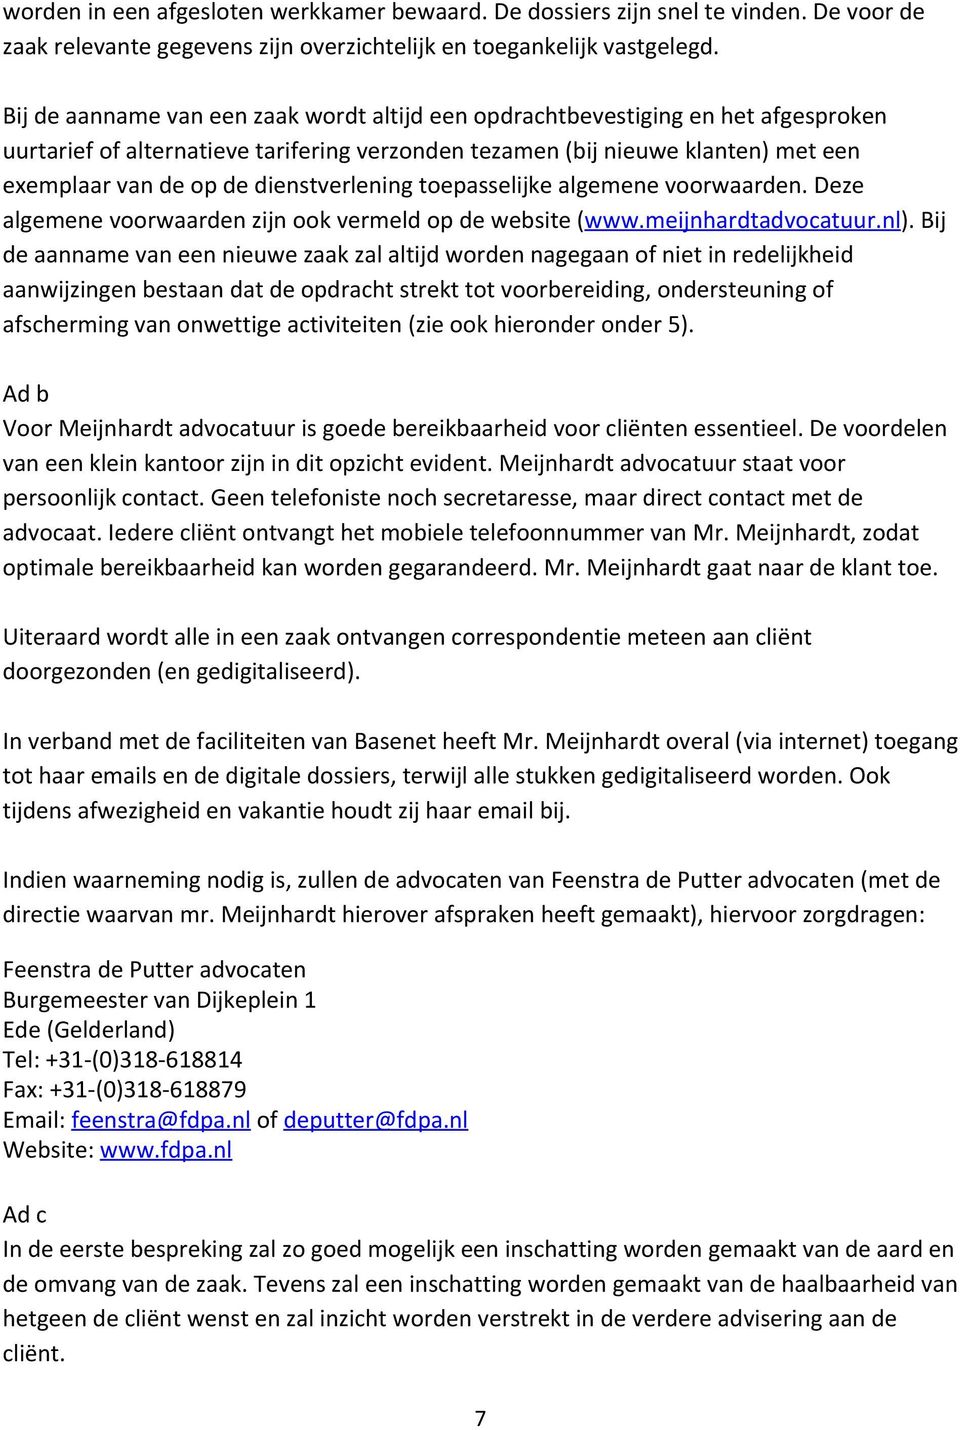 dienstverlening toepasselijke algemene voorwaarden. Deze algemene voorwaarden zijn ook vermeld op de website ( www.meijnhardtadvocatuur.nl ).